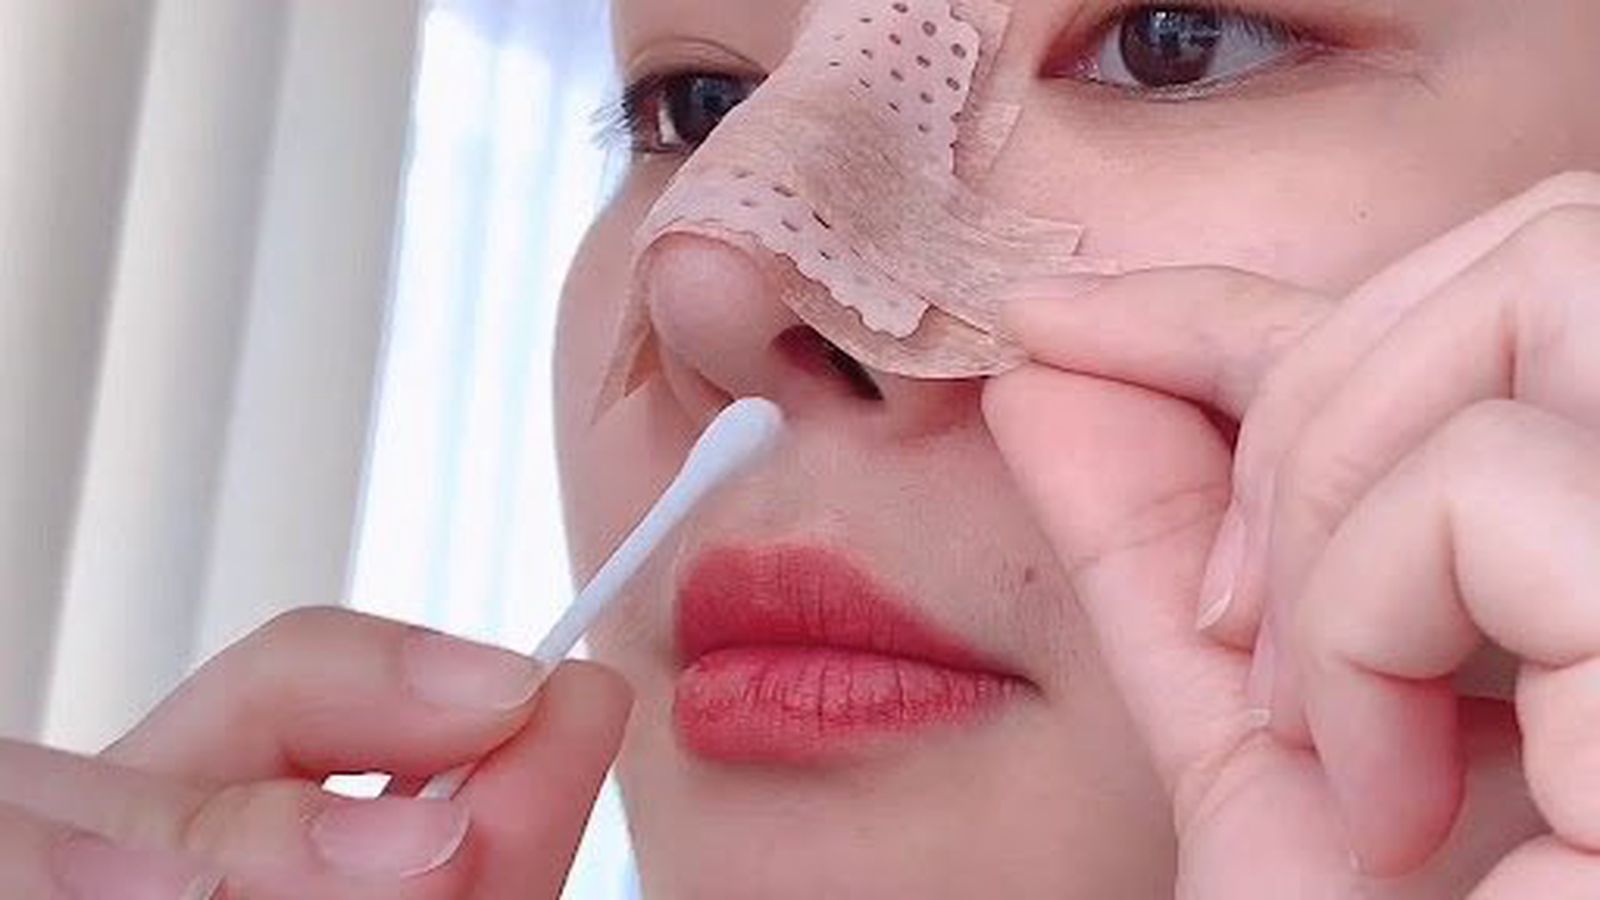 Cách chăm sóc và vệ sinh mũi sau phẫu thuật nâng mũi